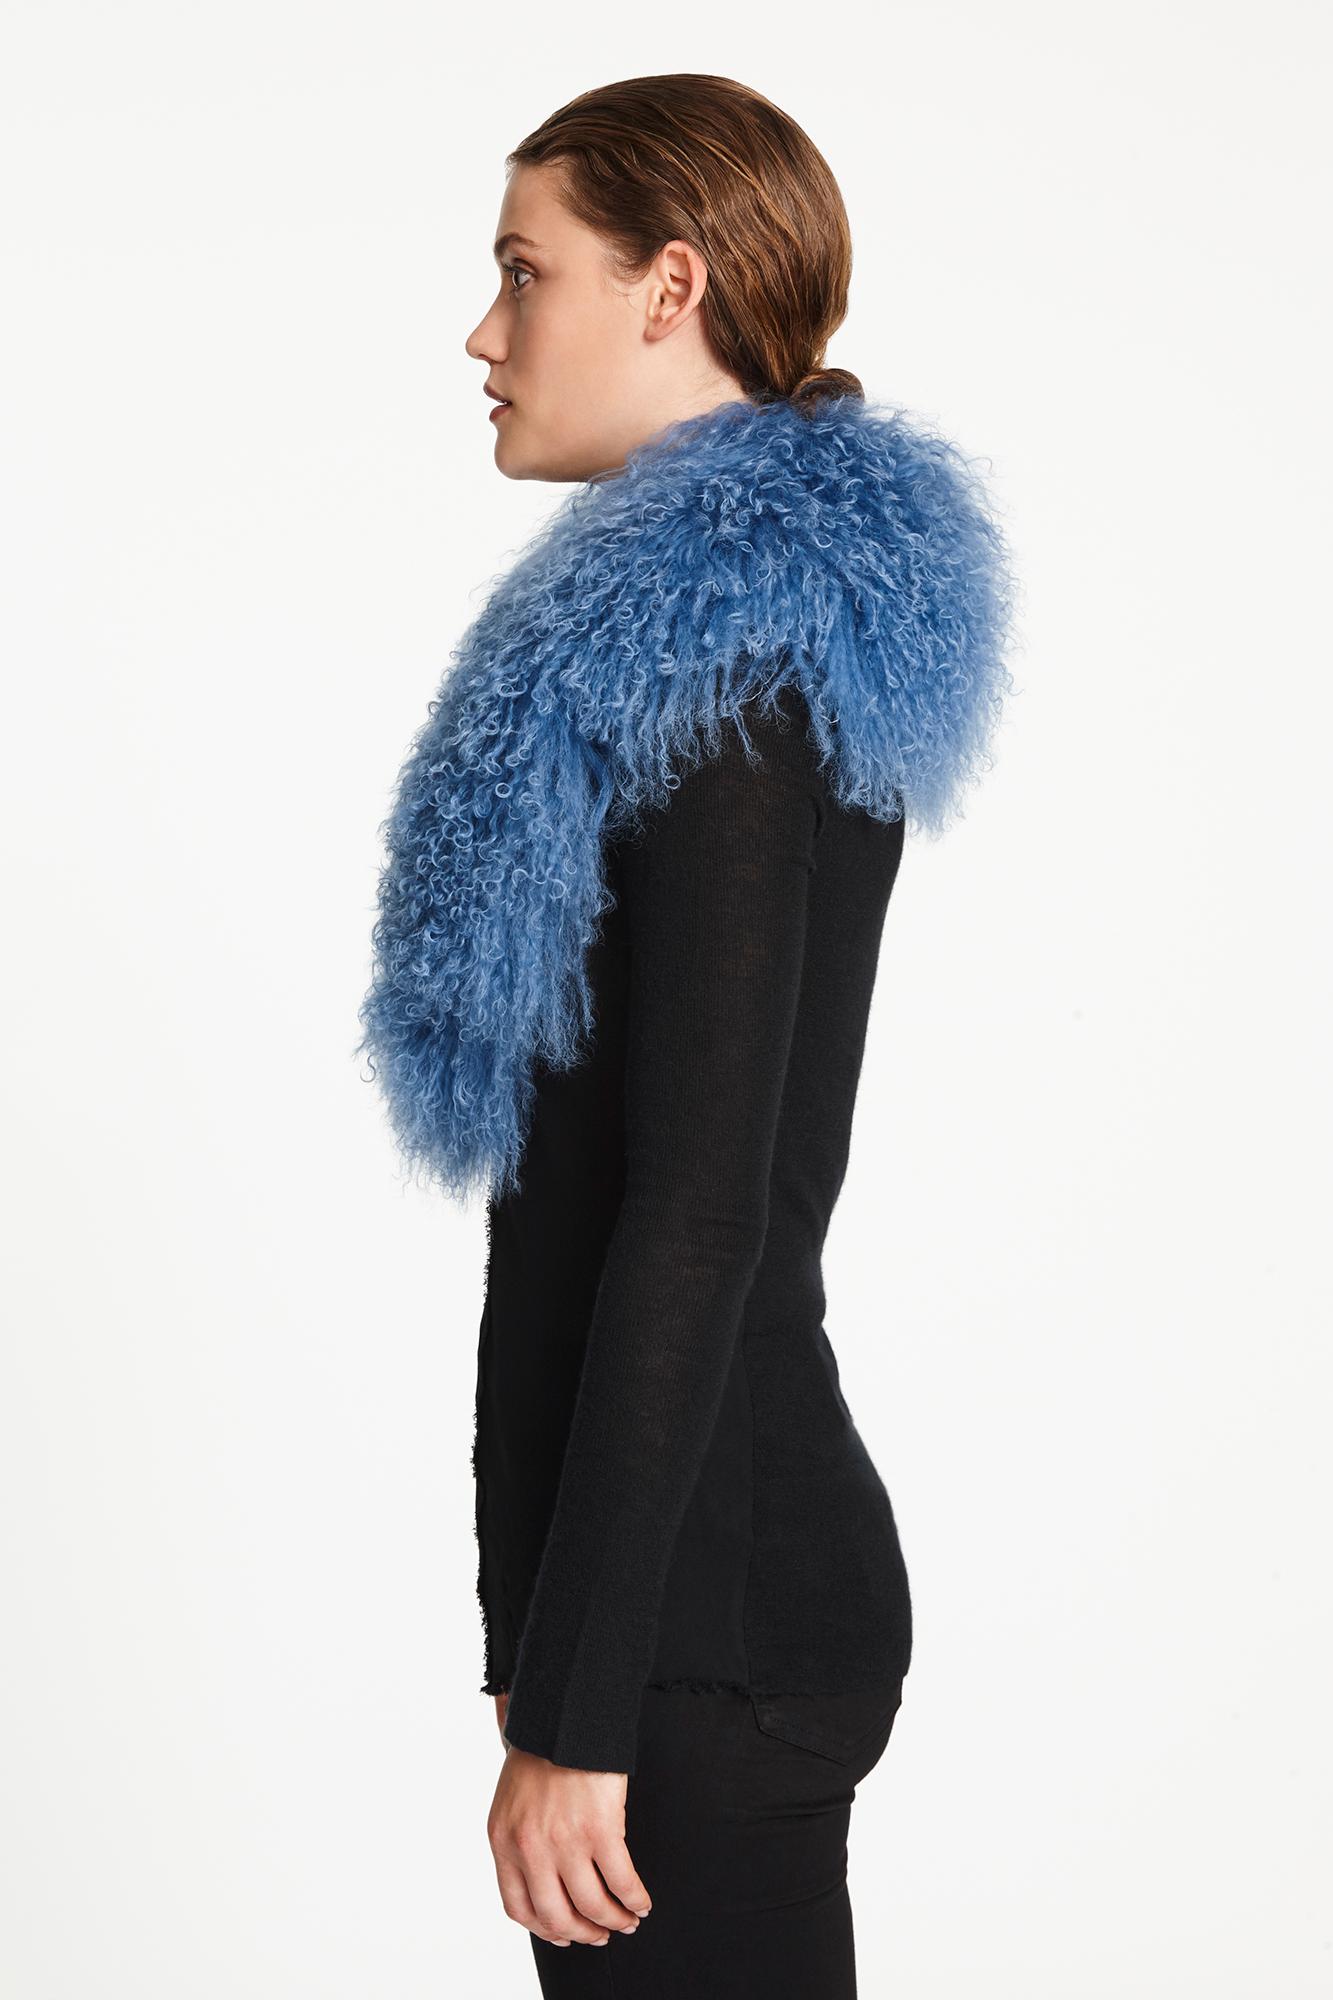 Verheyen London Shawl Collar in Blue Topaz Mongolian Lamb Fur lined in silk new 3